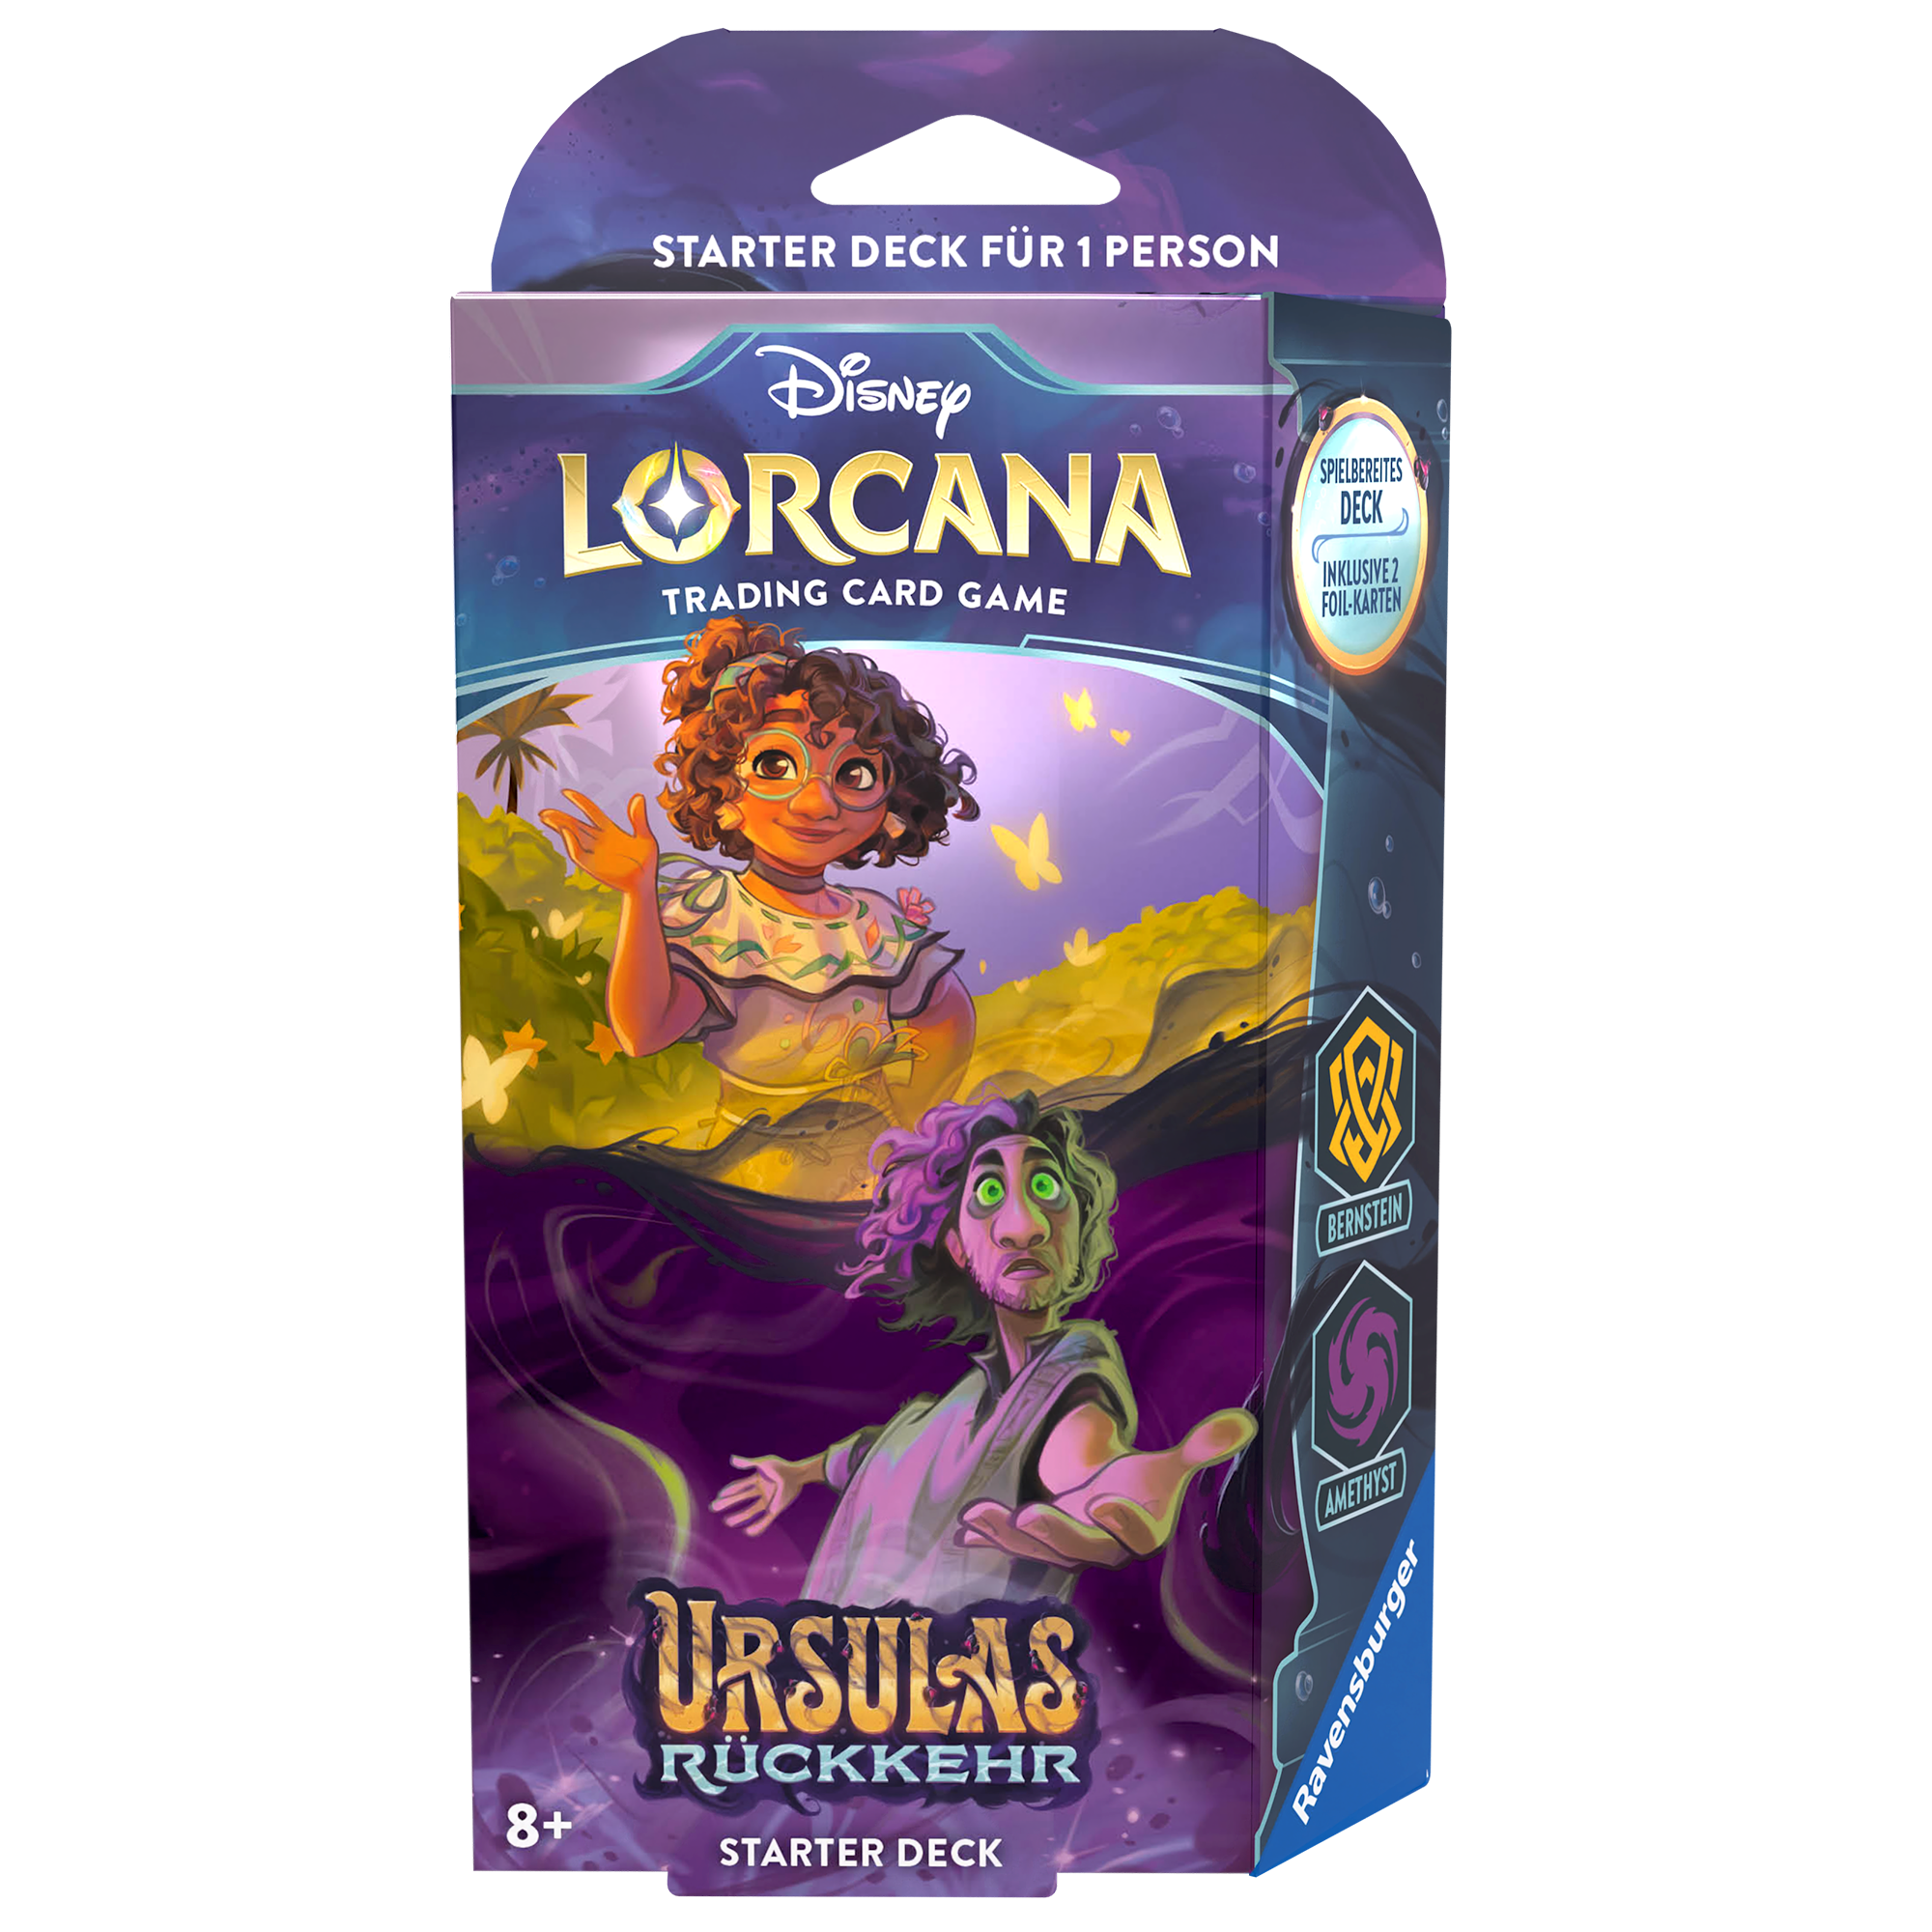 Disney Lorcana - Ursulas Rückkehr Starter Deck - Mirabel und Bruno - DE